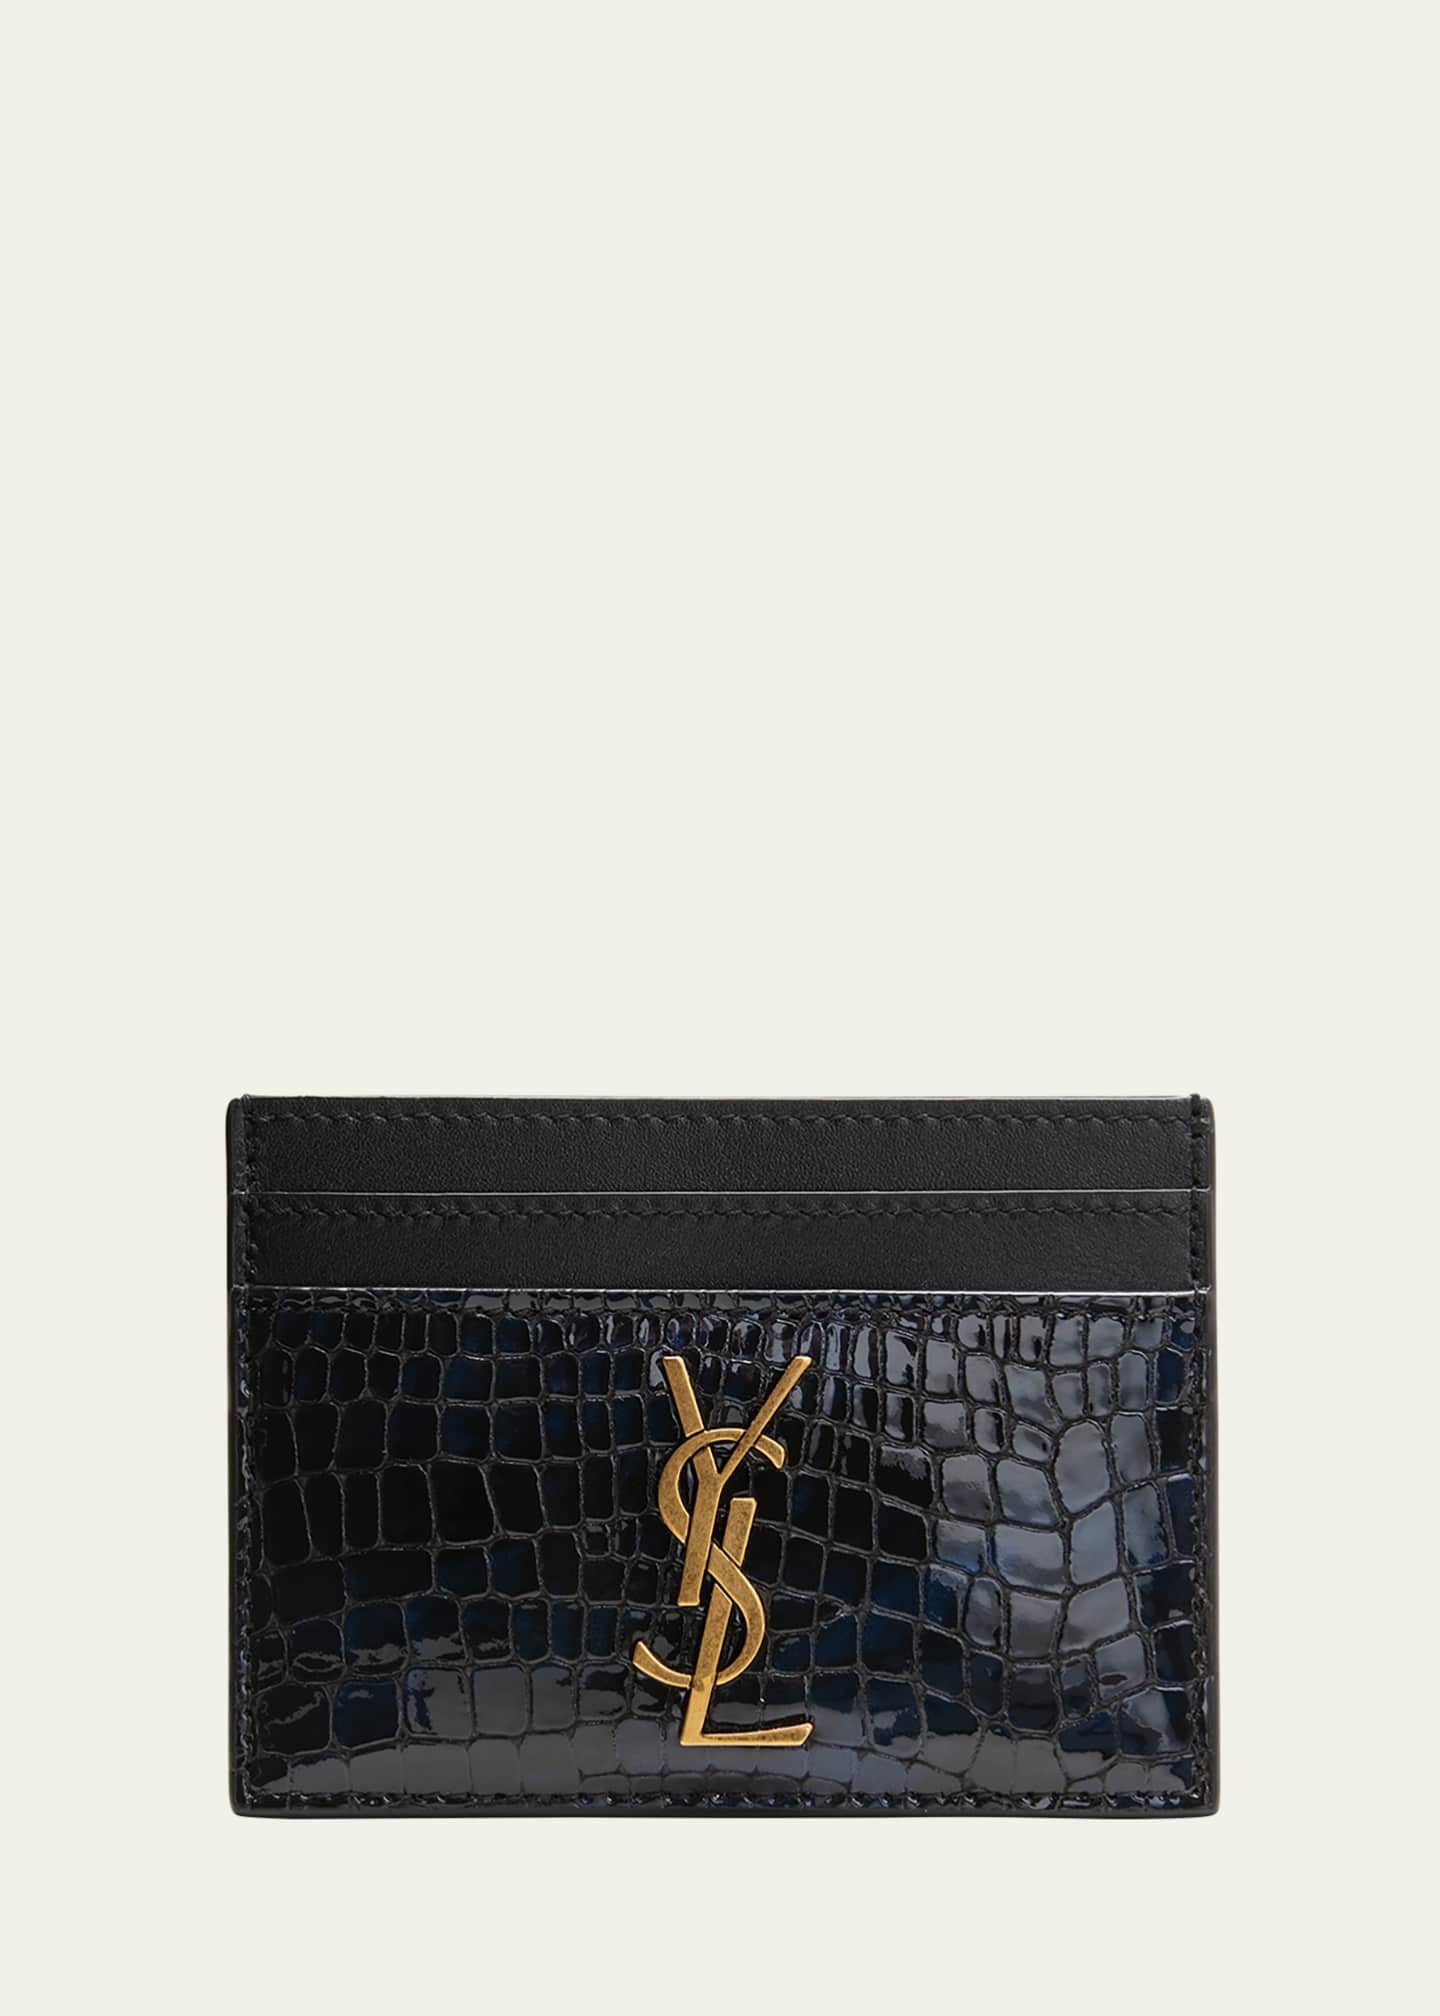 YSL Metallic Leather Card Case